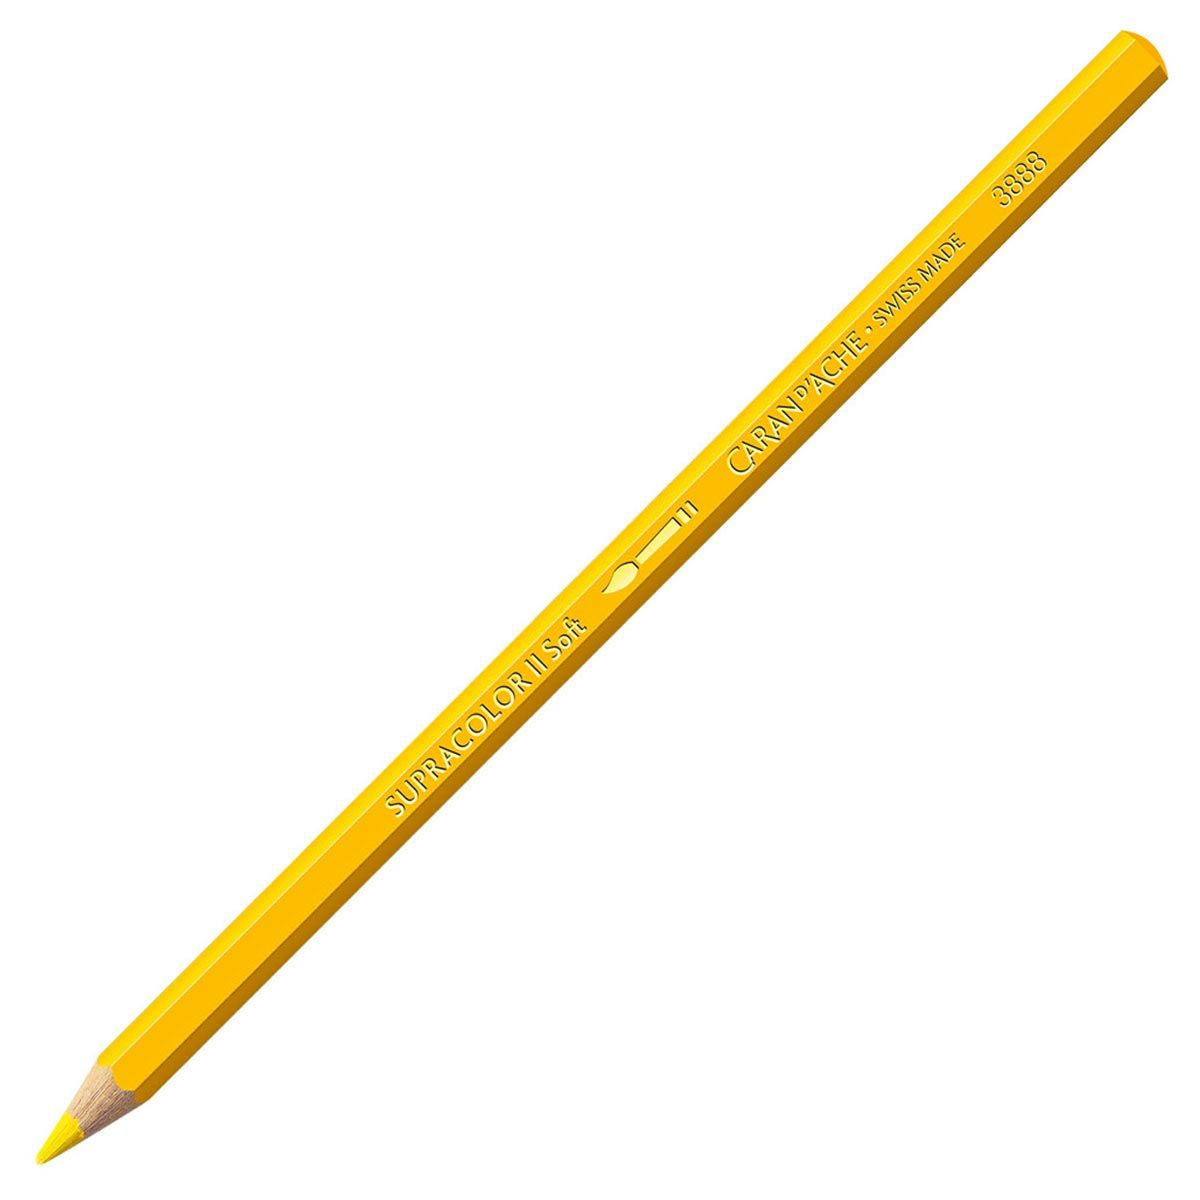 Caran d'Ache Supracolor ll Soft Aquarelle Pencil - Yellow 010